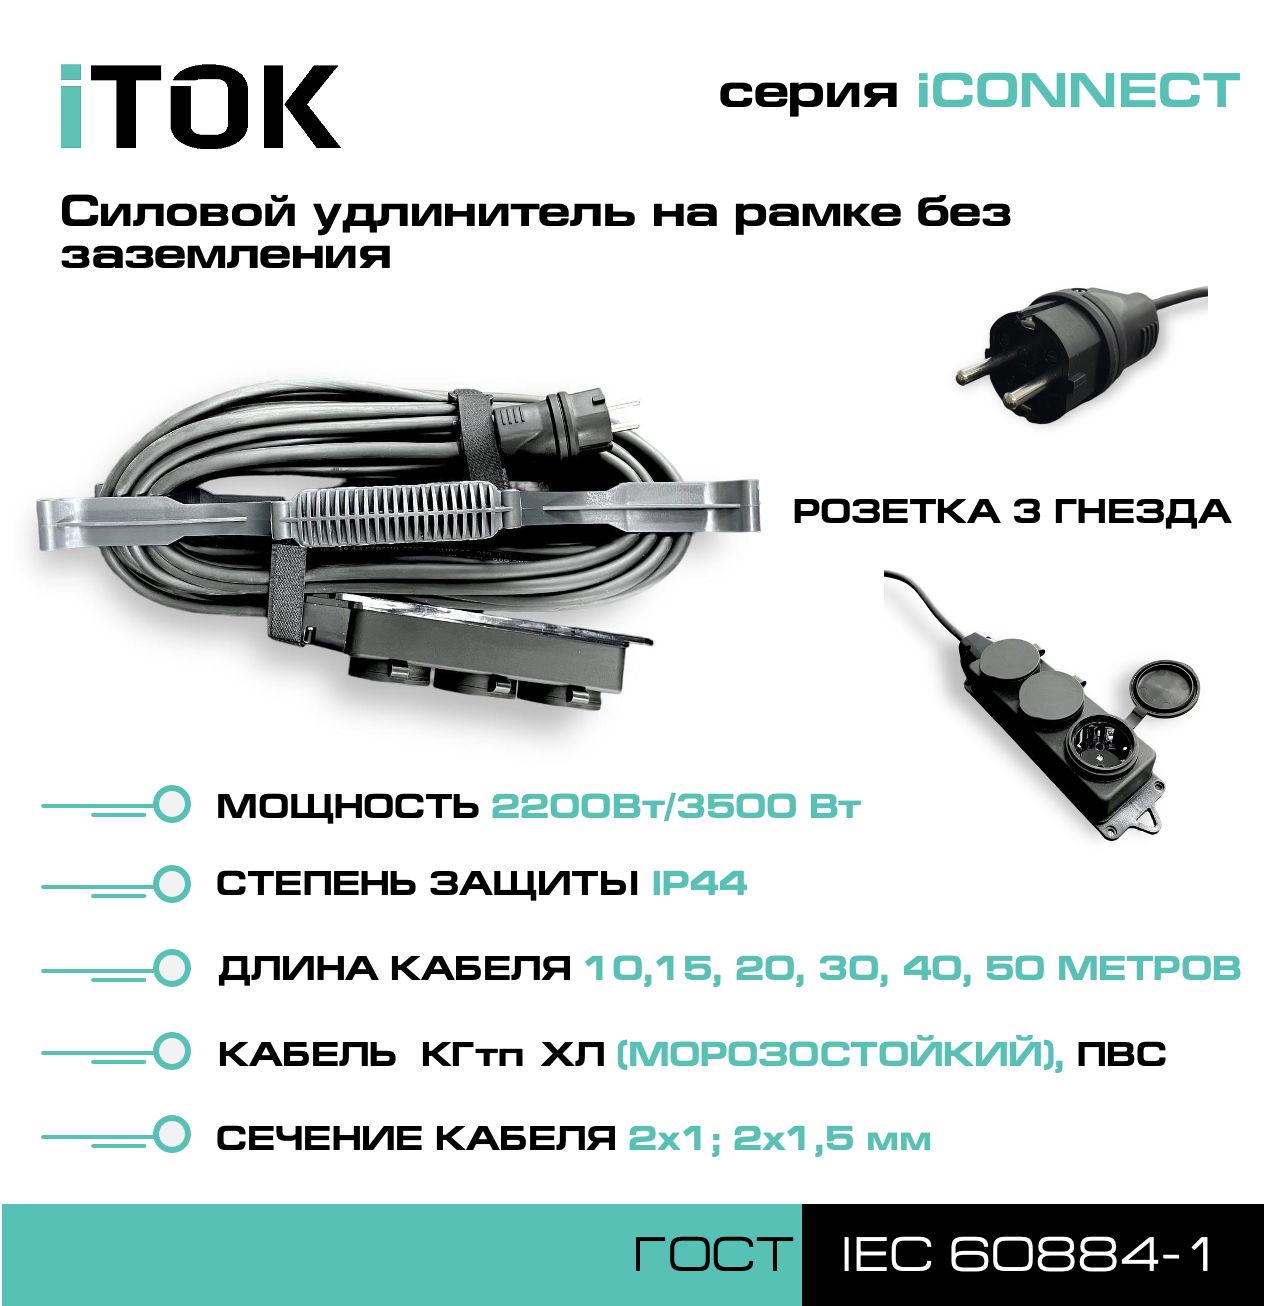 Удлинитель на рамке без земли серии iTOK iCONNECT КГтп-ХЛ 2х1,5 мм 3 гнезда IP44 40 м зарядные гнезда usb в виде клавиши marina 4 8 а more 10264237